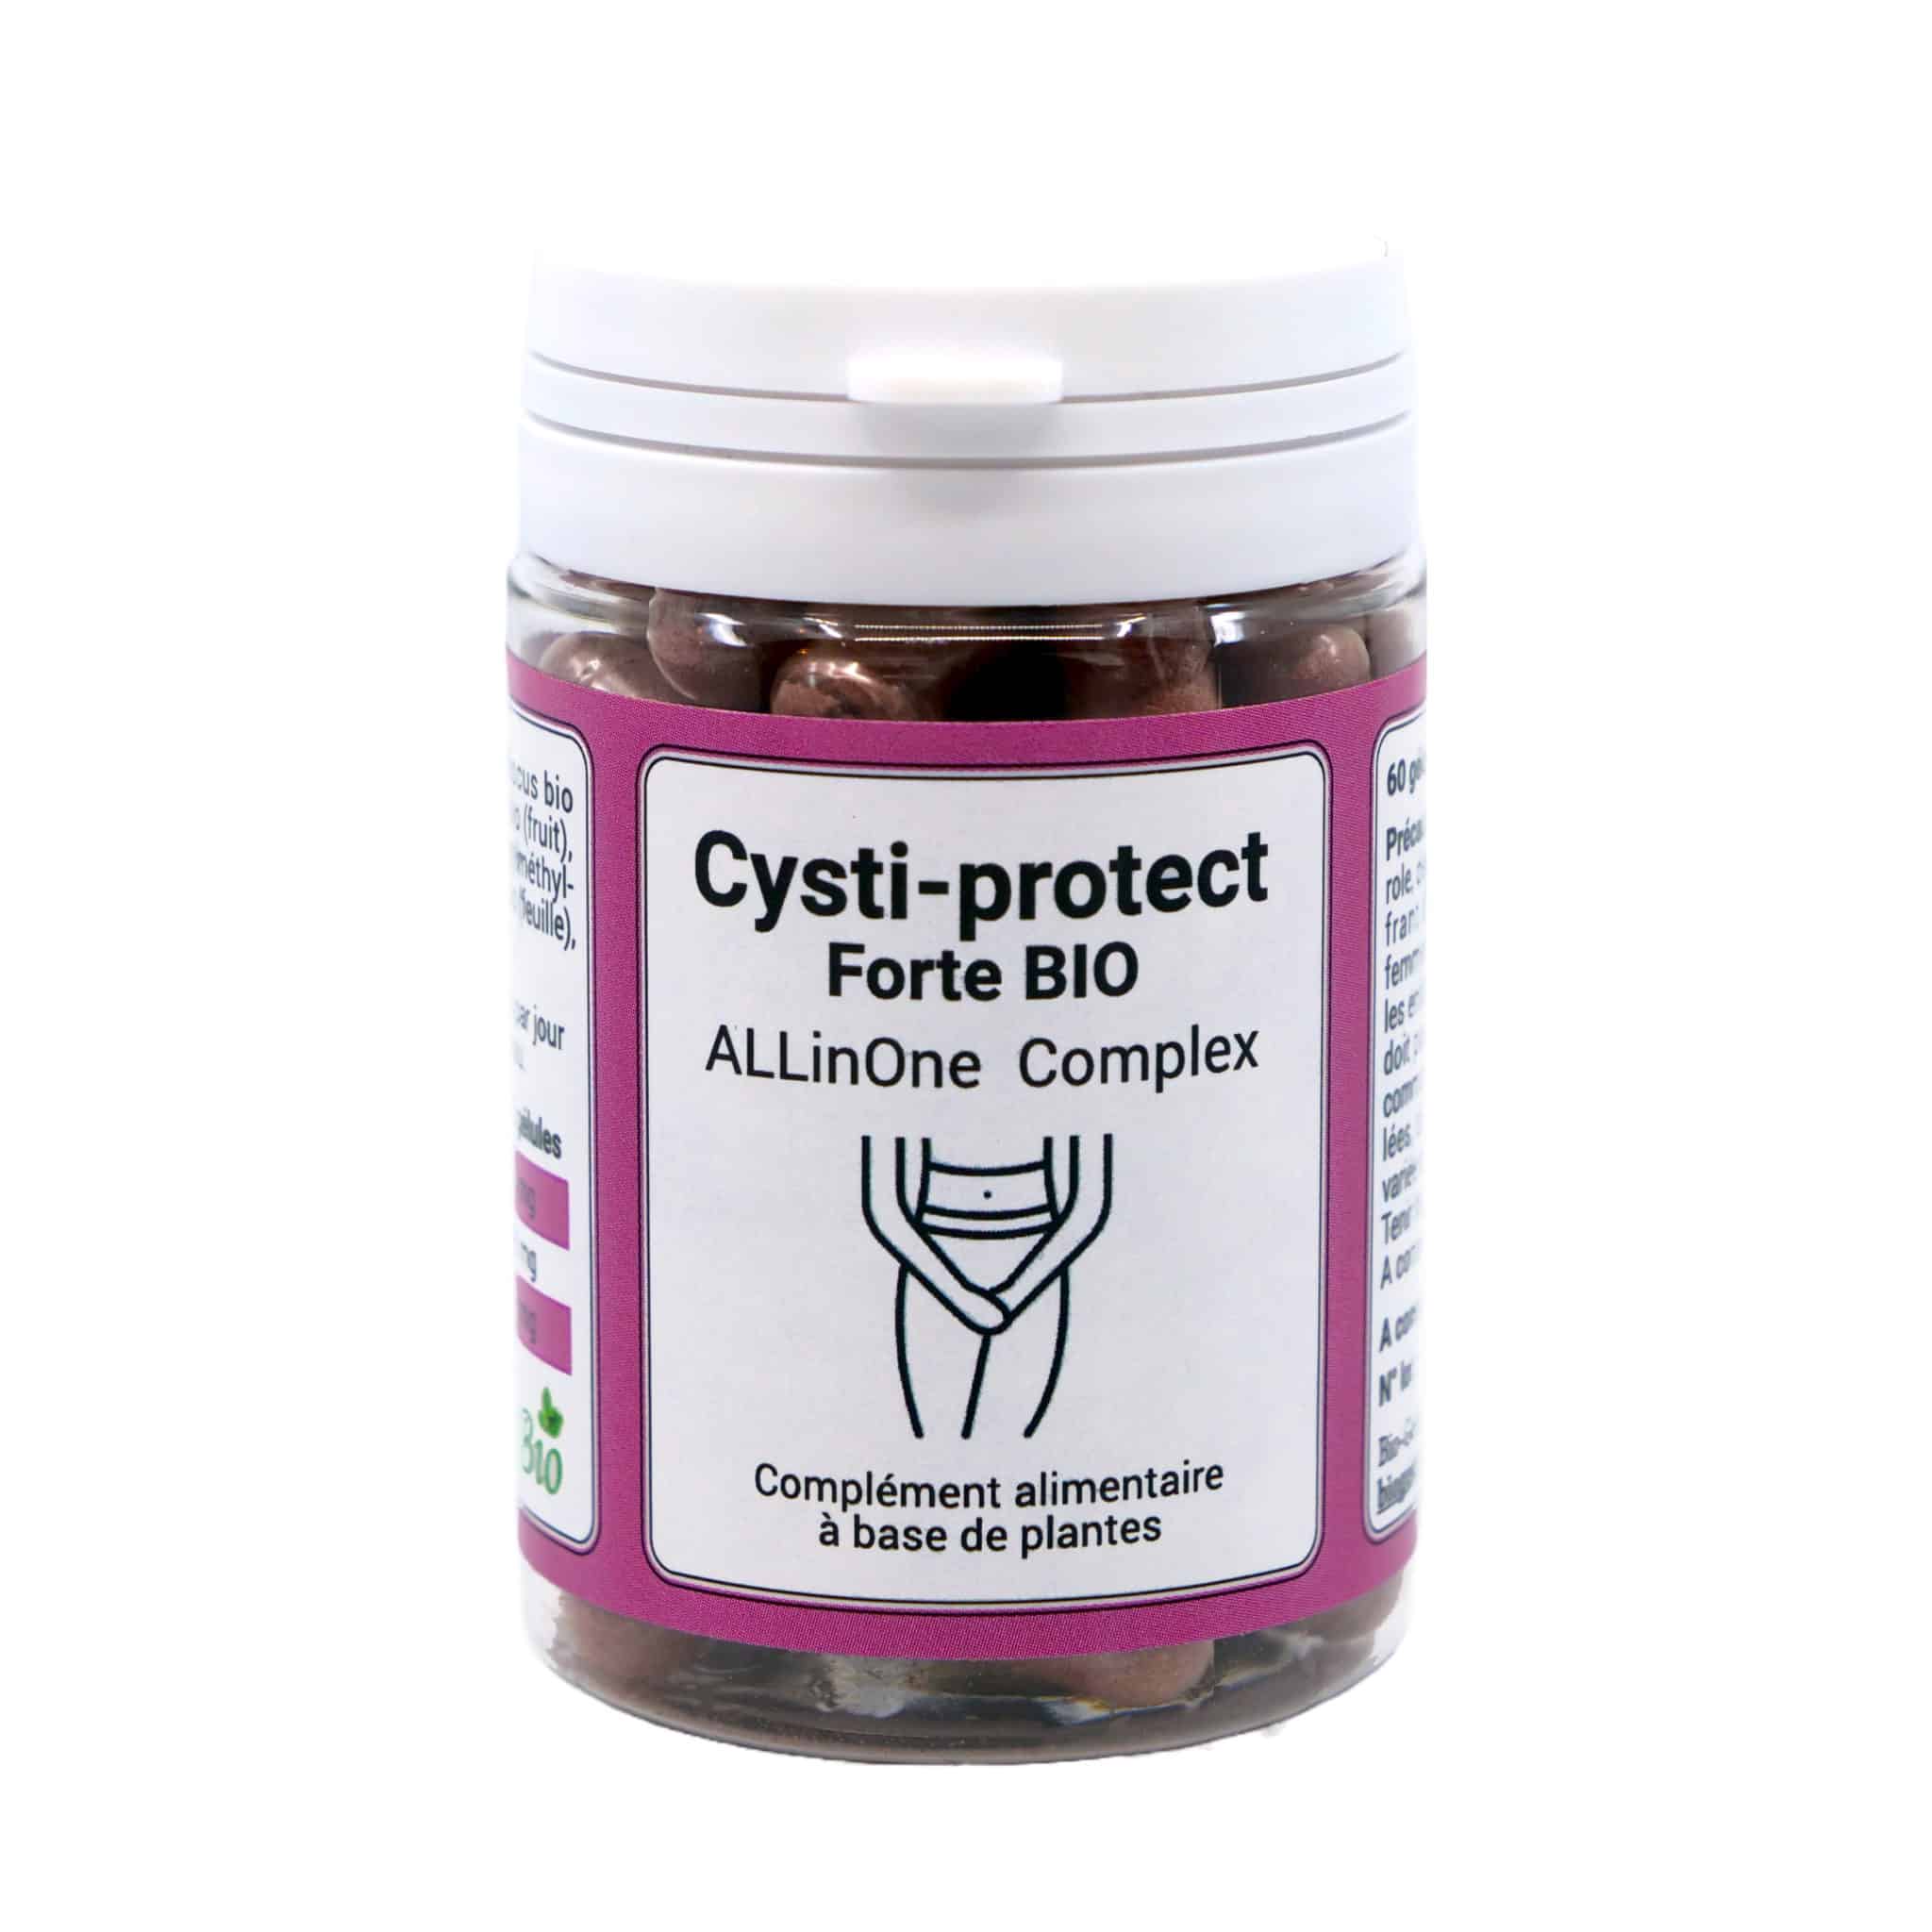 Composé de canneberge, d'hibiscus et de busserole bio, Cysti-protect Forte BIO (AllinOne Complex) est un complément alimentaire novateur qui peut aider à prévenir et traiter naturellement la cystite.